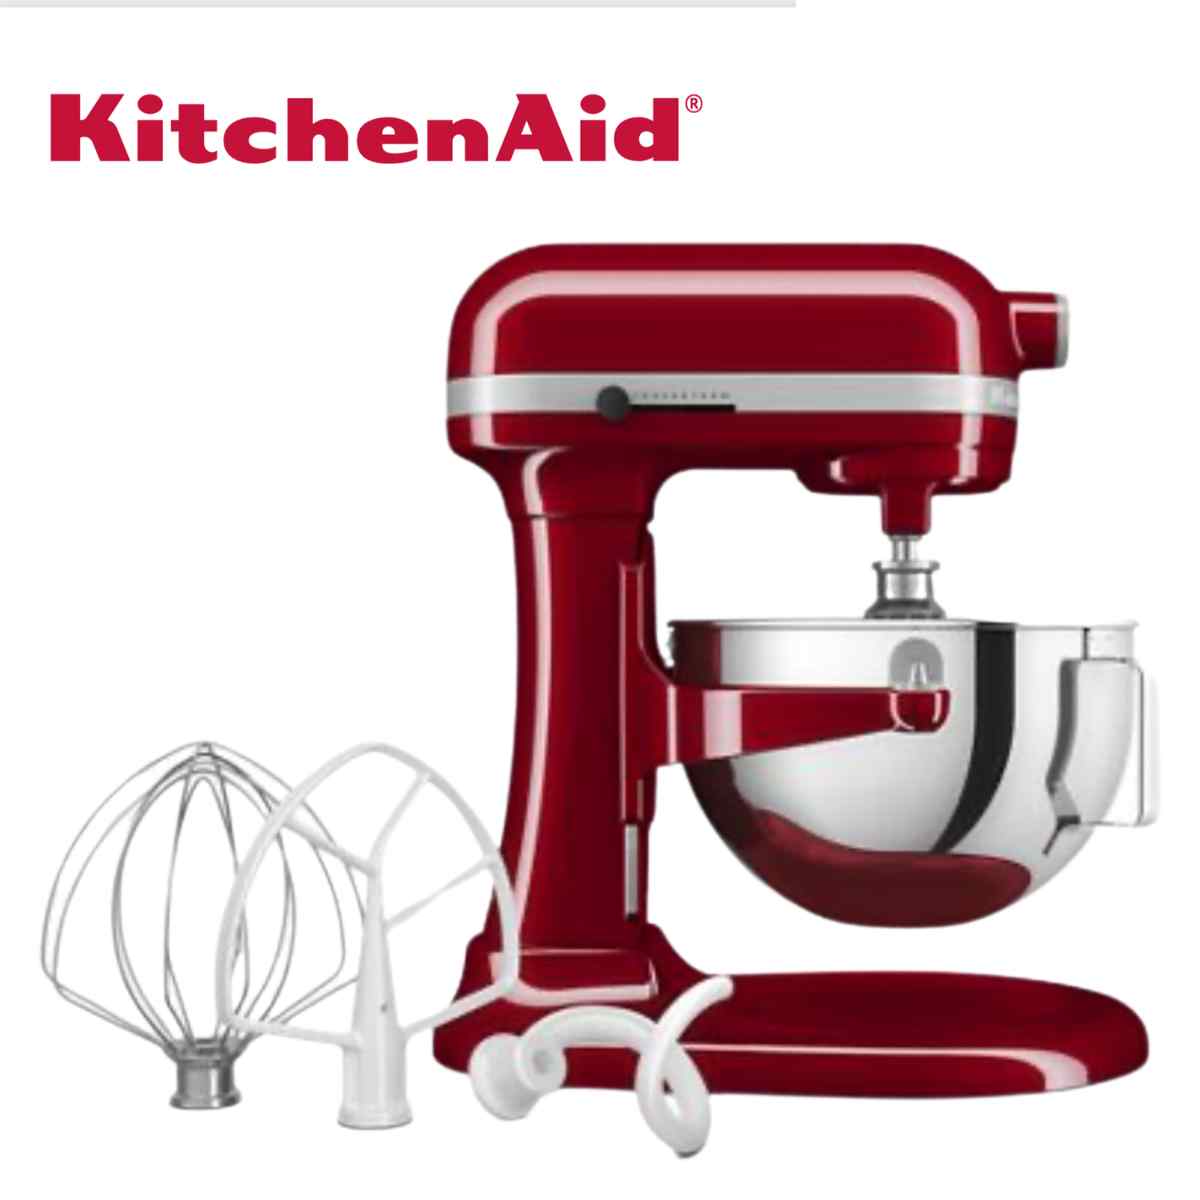 KitchenAid – 5.5 Quart Bowl-Lift Stand Mixer $249.99 (Reg. $449.99